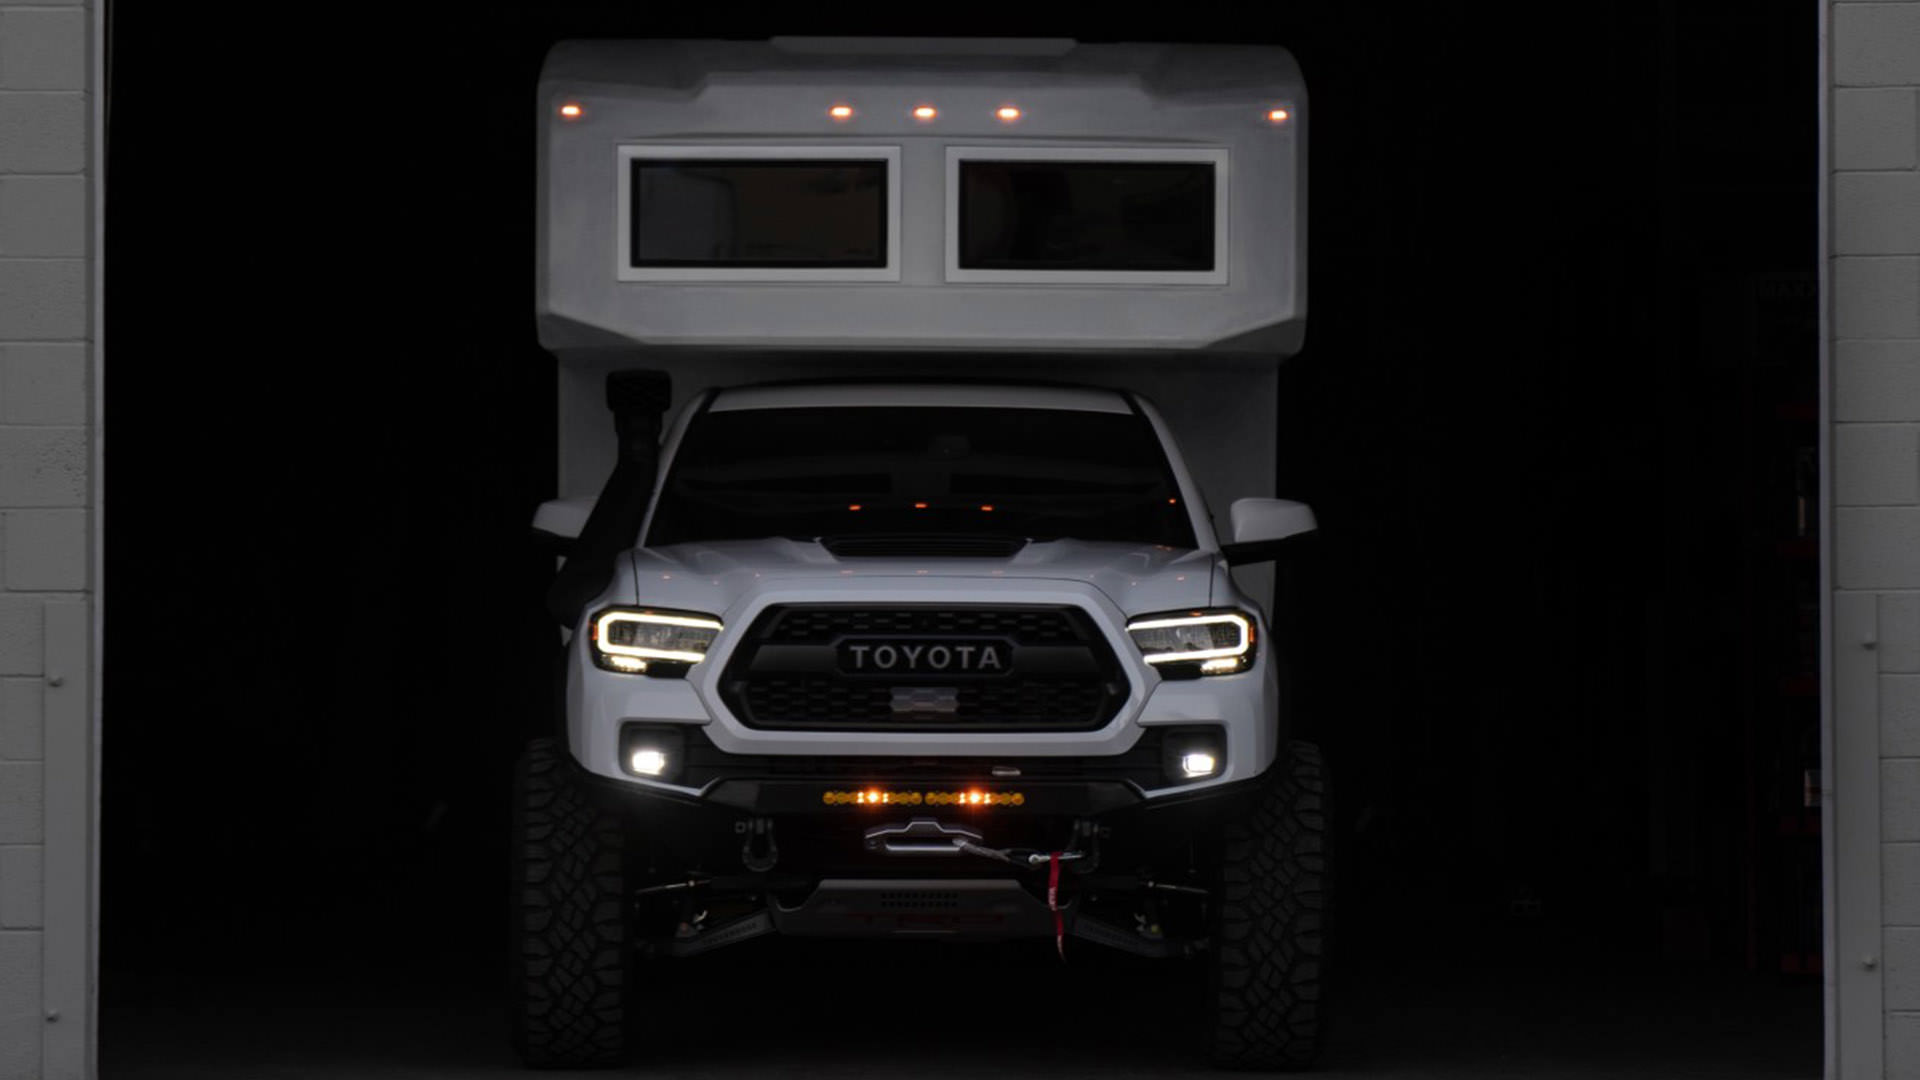 نمای جلو خودروی تفریحی مبتنی بر وانت پیکاپ تویوتا تاکوما / Toyota Tacoma 4x4 RV سفید رنگ